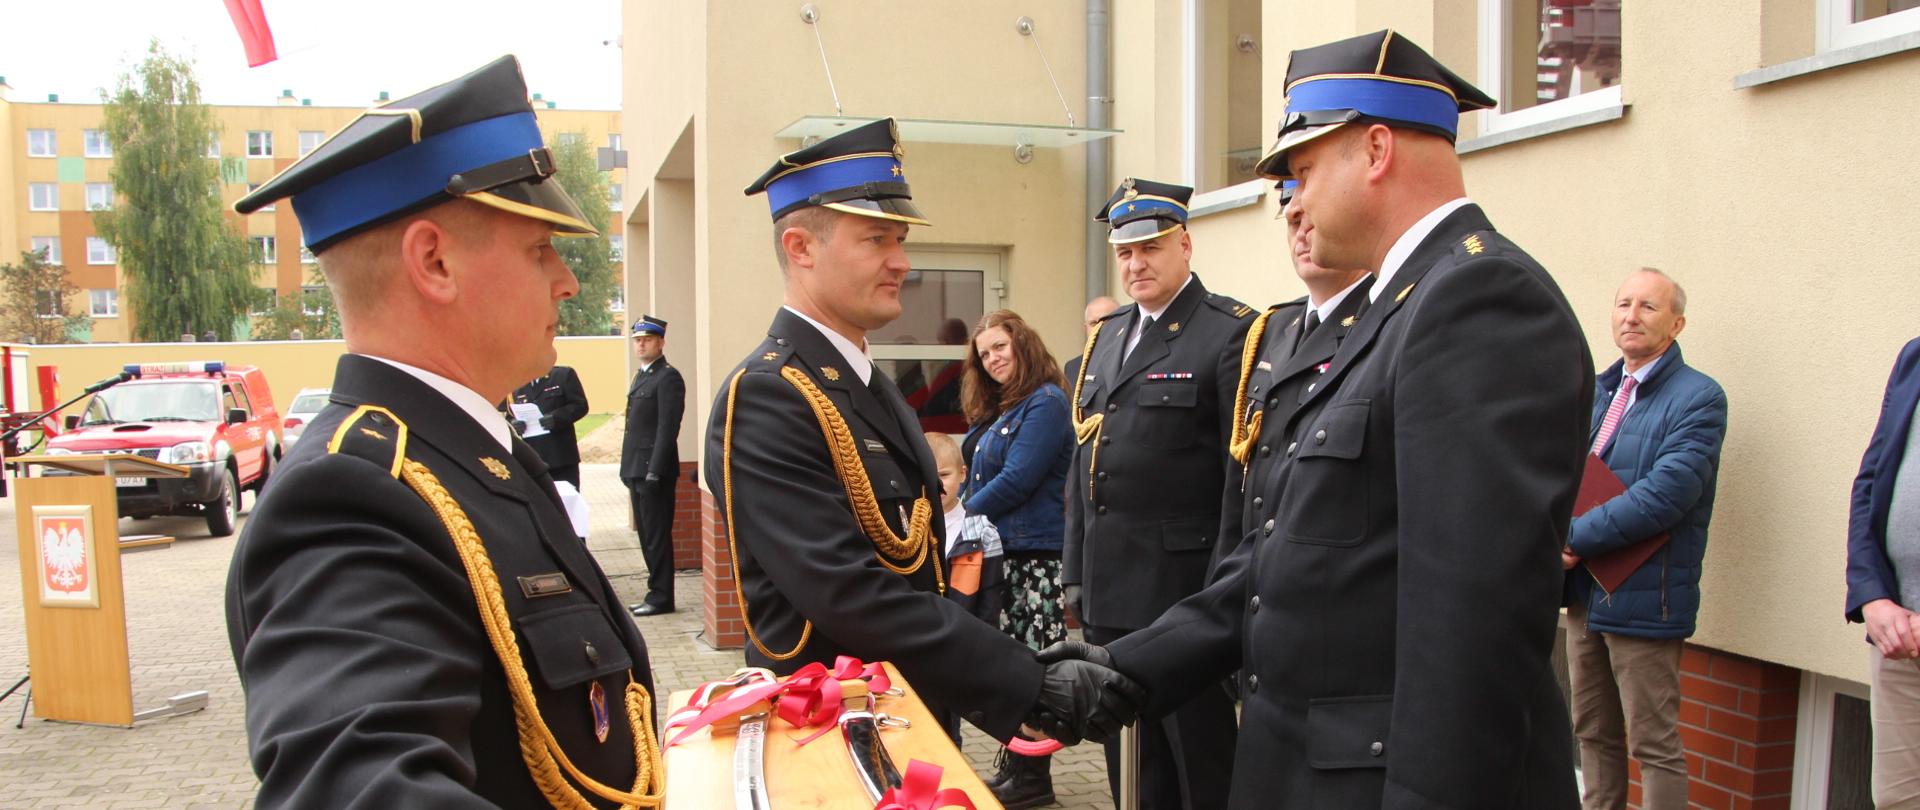 Zdjęcie Przedstawia Komendanta Powiatowego, odbierającego pamiątkowe prezenty od funkcjonariuszy KP PSP Wałcz.